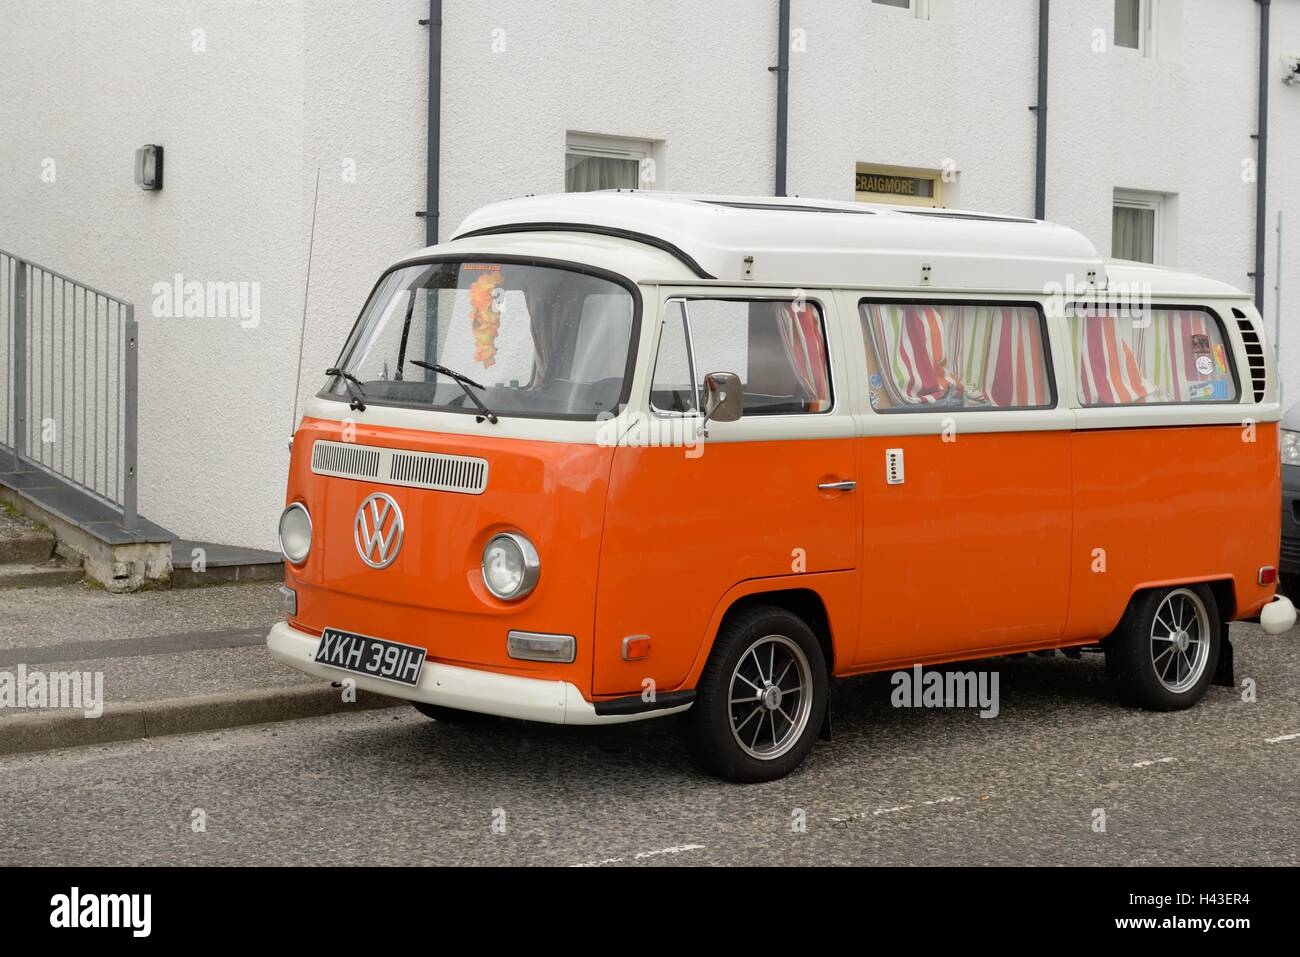 Orange Volkswagen camper van in Scotland, UK Stock Photo - Alamy